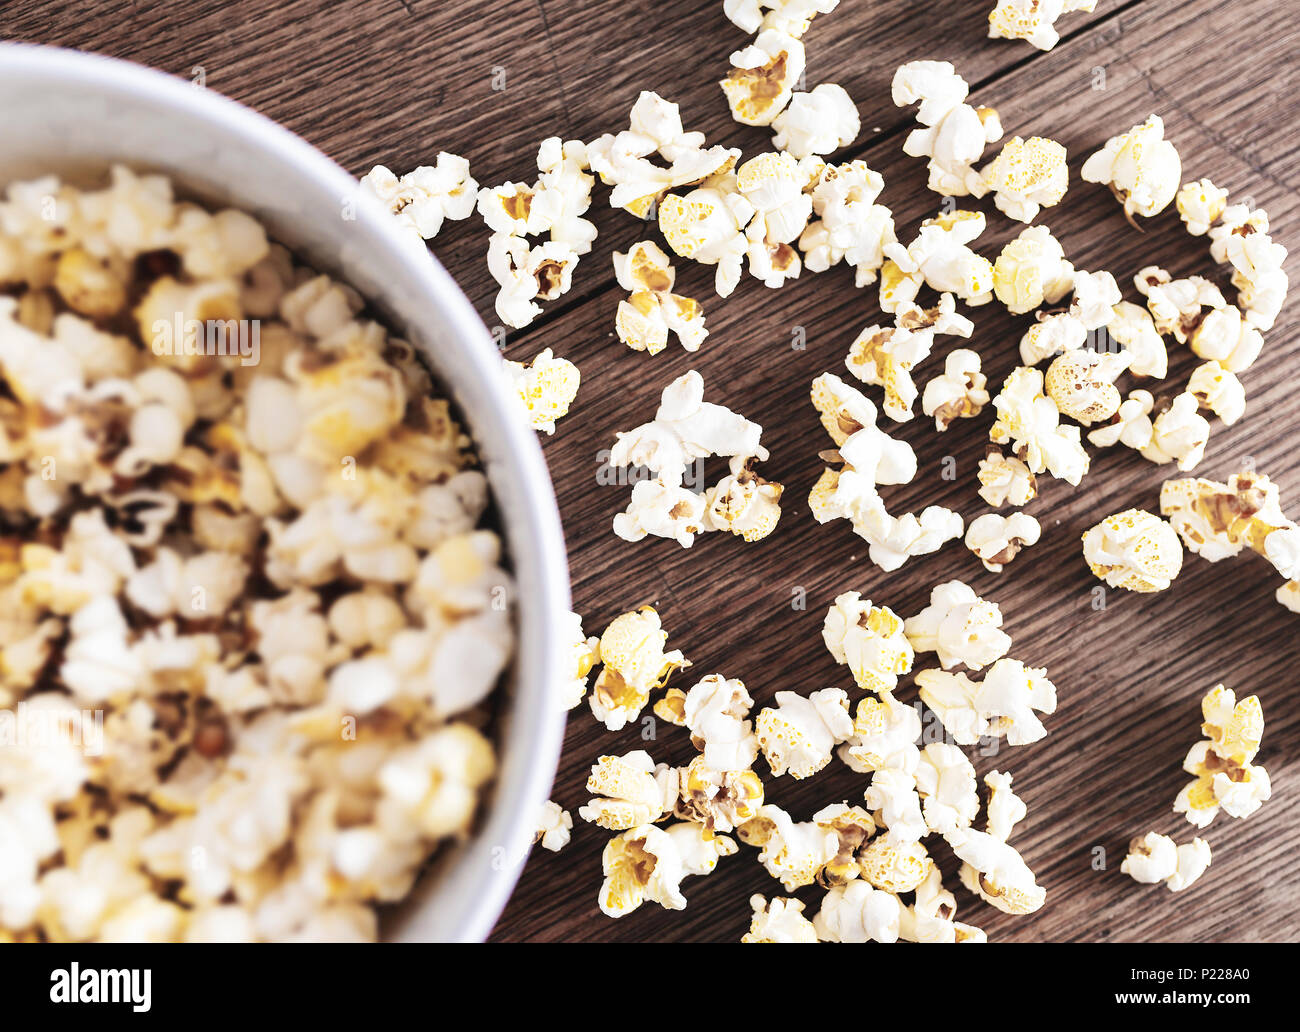 Direttamente al di sopra di close-up di ciotola riempita con popcorn su tavola in legno rustico Foto Stock